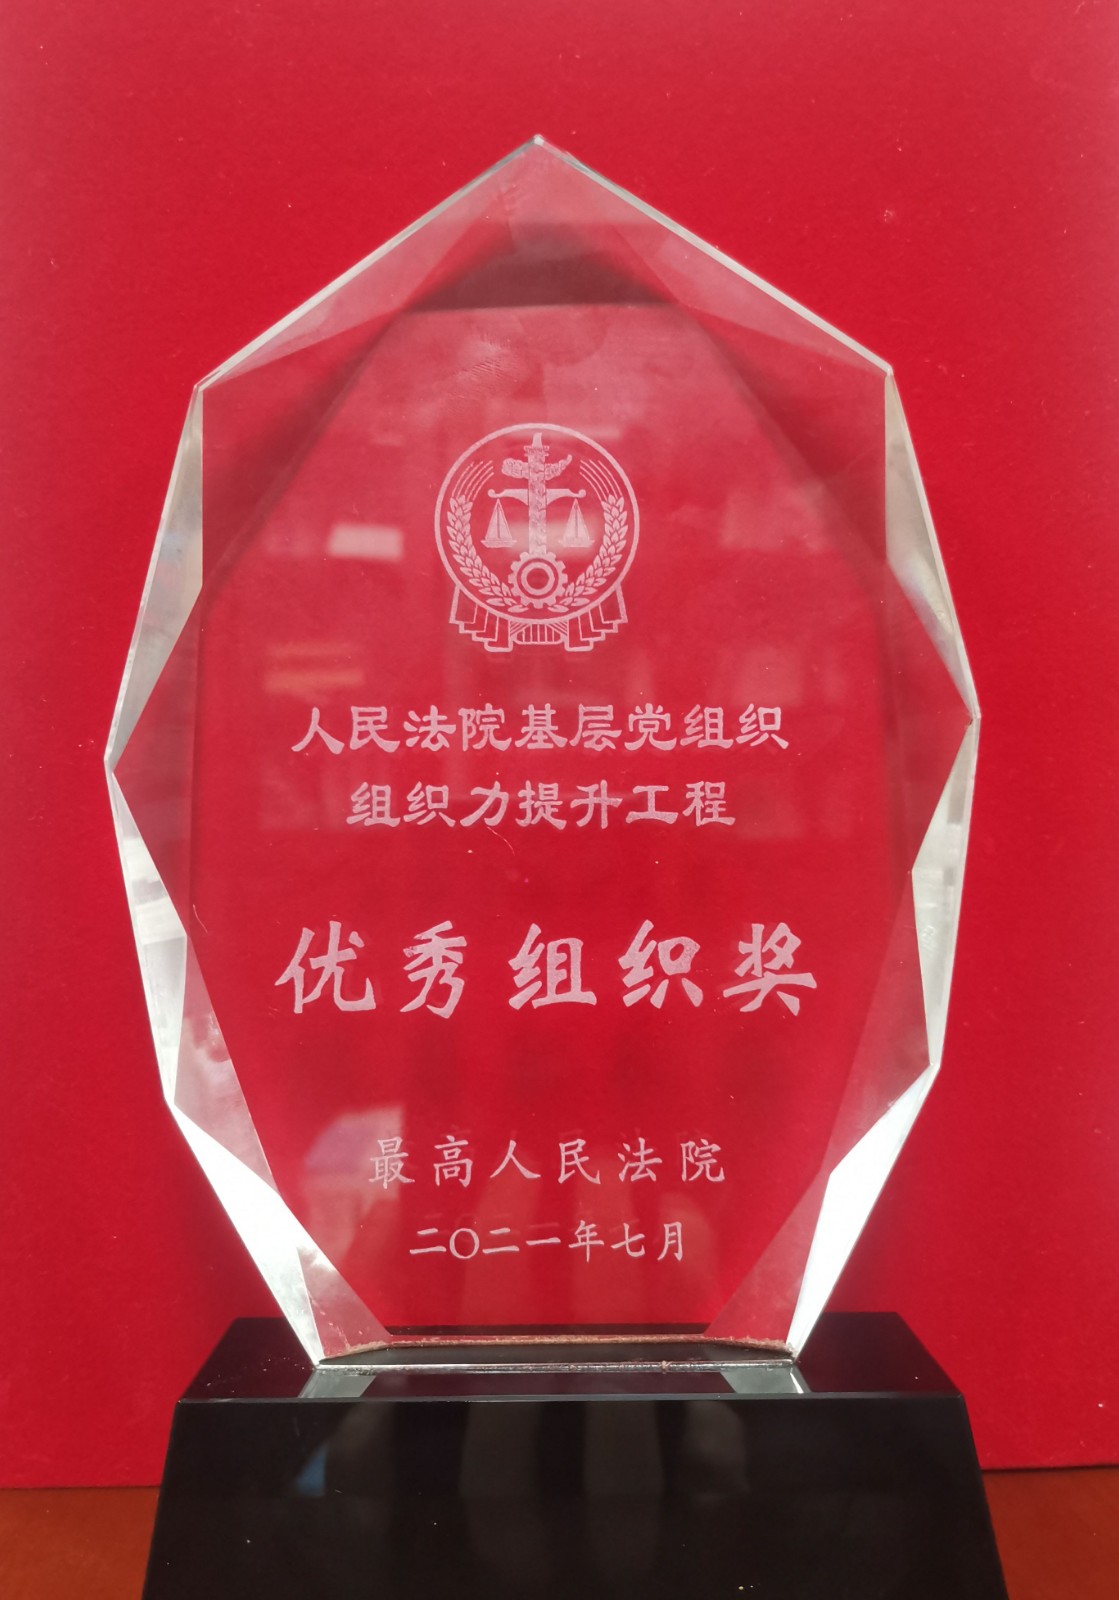 合肥中院获评“人民法院基层党组织组织力提升工程优秀组织奖”。